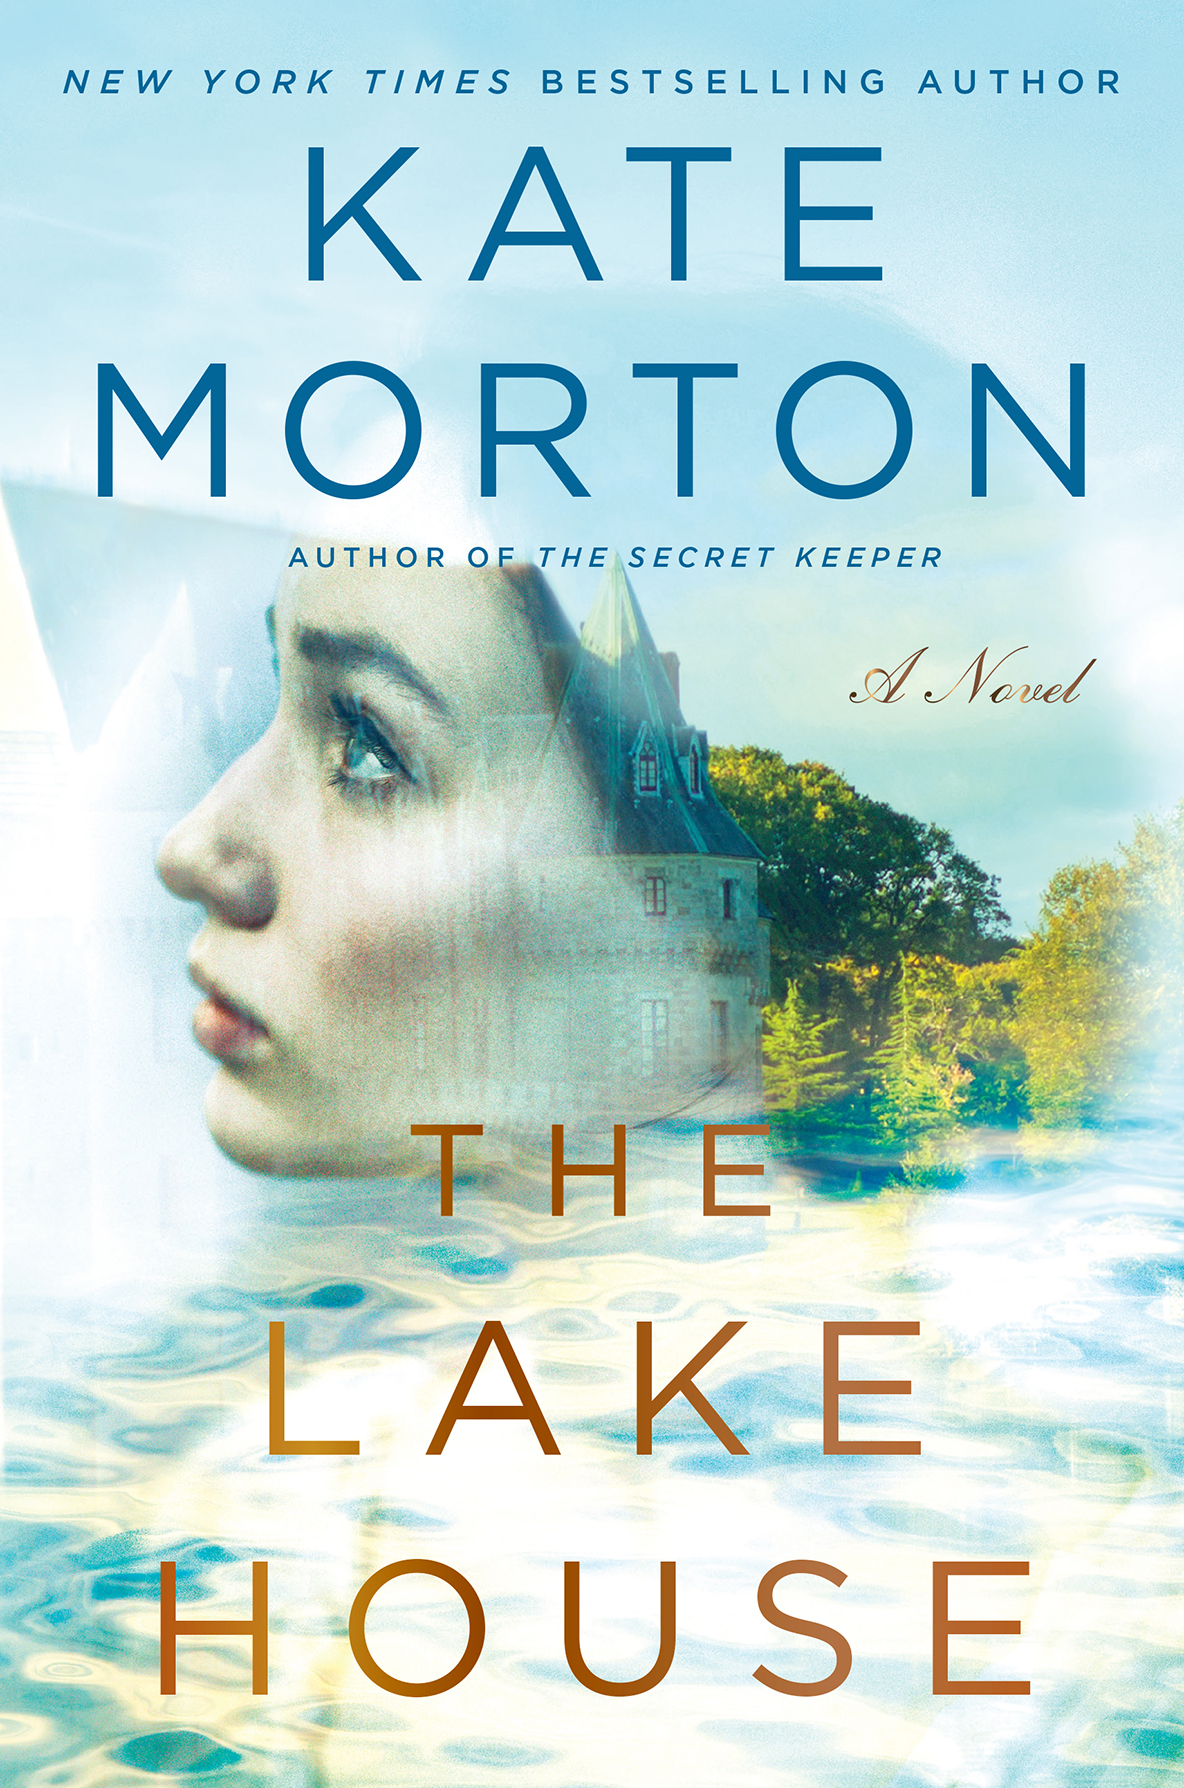 The Lake House by Kate Morton